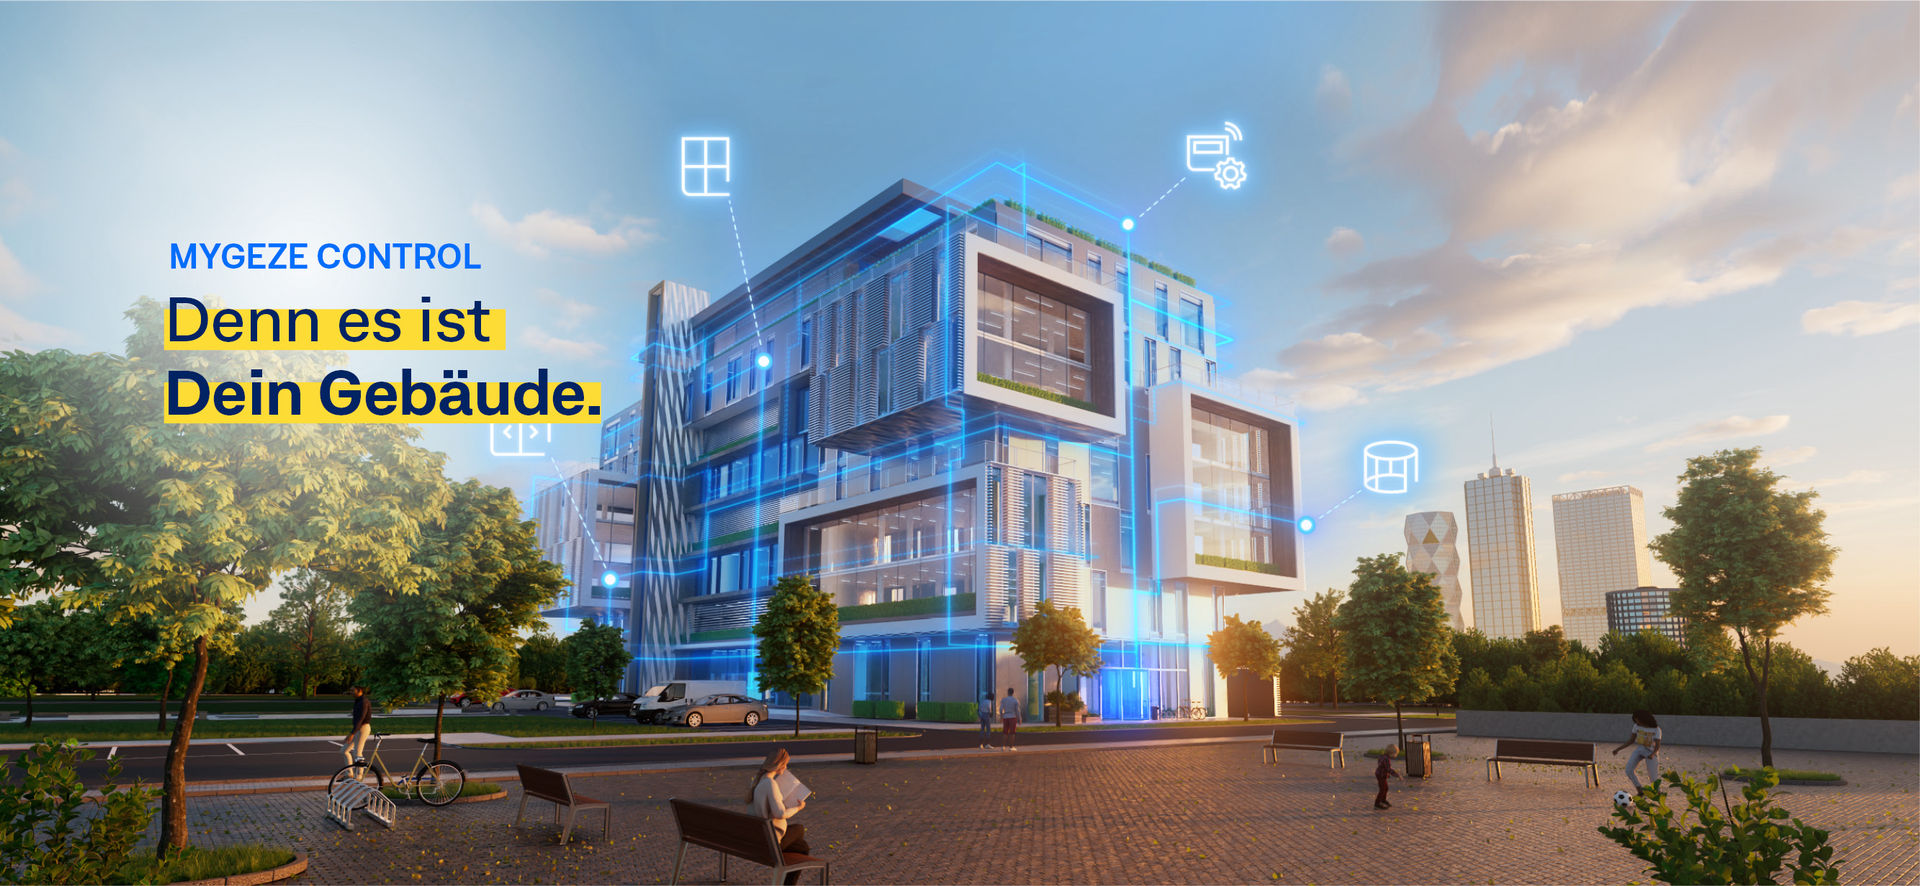 Alternativer Text: Modellbild eines begrünten, modernen und mehrstöckigen Gebäudes mit Kennzeichnung der Bereiche, in denen GEZE Produkte eingebaut sind.